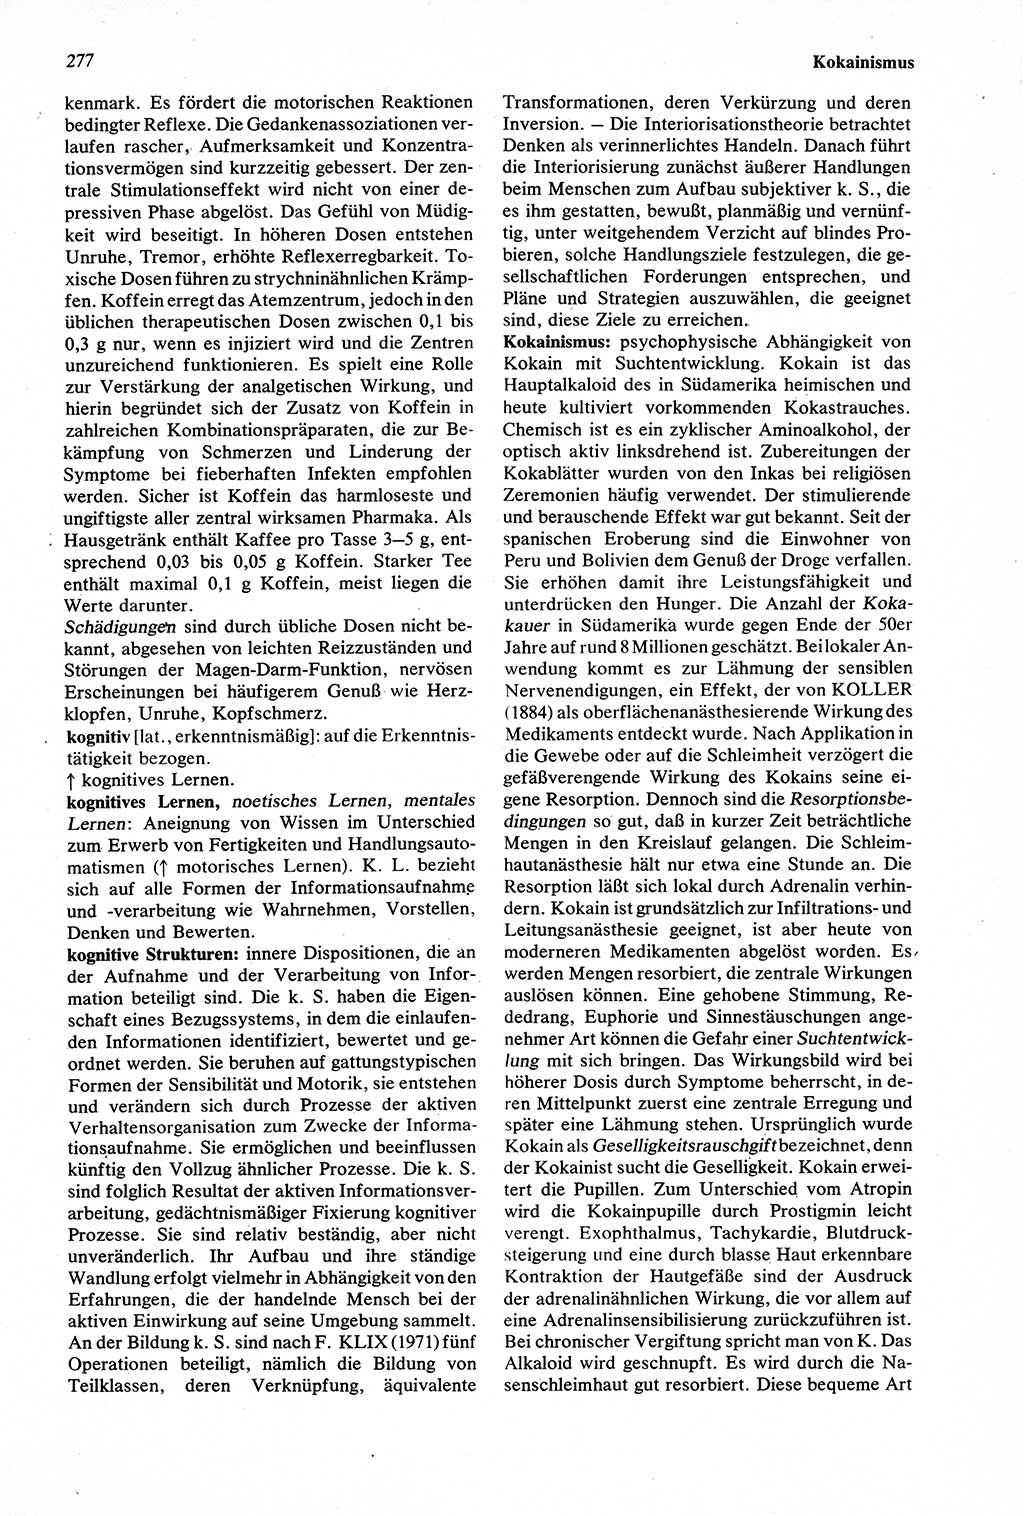 Wörterbuch der Psychologie [Deutsche Demokratische Republik (DDR)] 1976, Seite 277 (Wb. Psych. DDR 1976, S. 277)